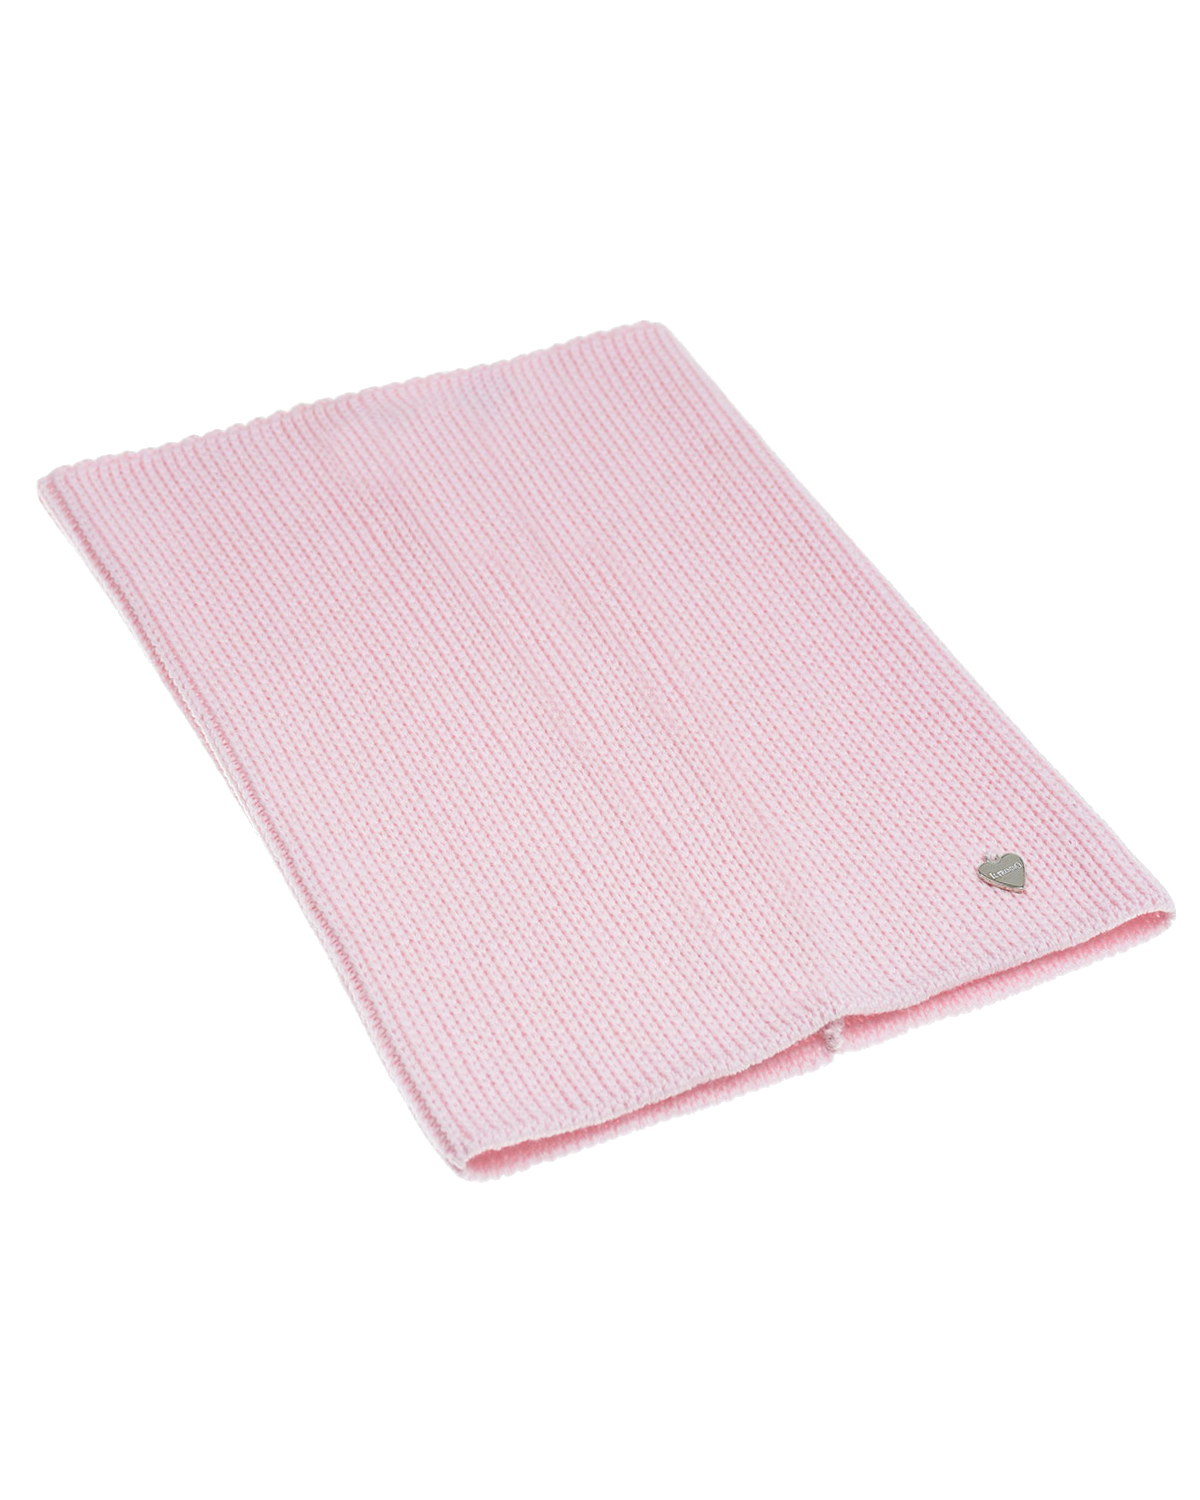 Шерстяной шарф-ворот розового цвета, 24х30 см Il Trenino детский, размер unica